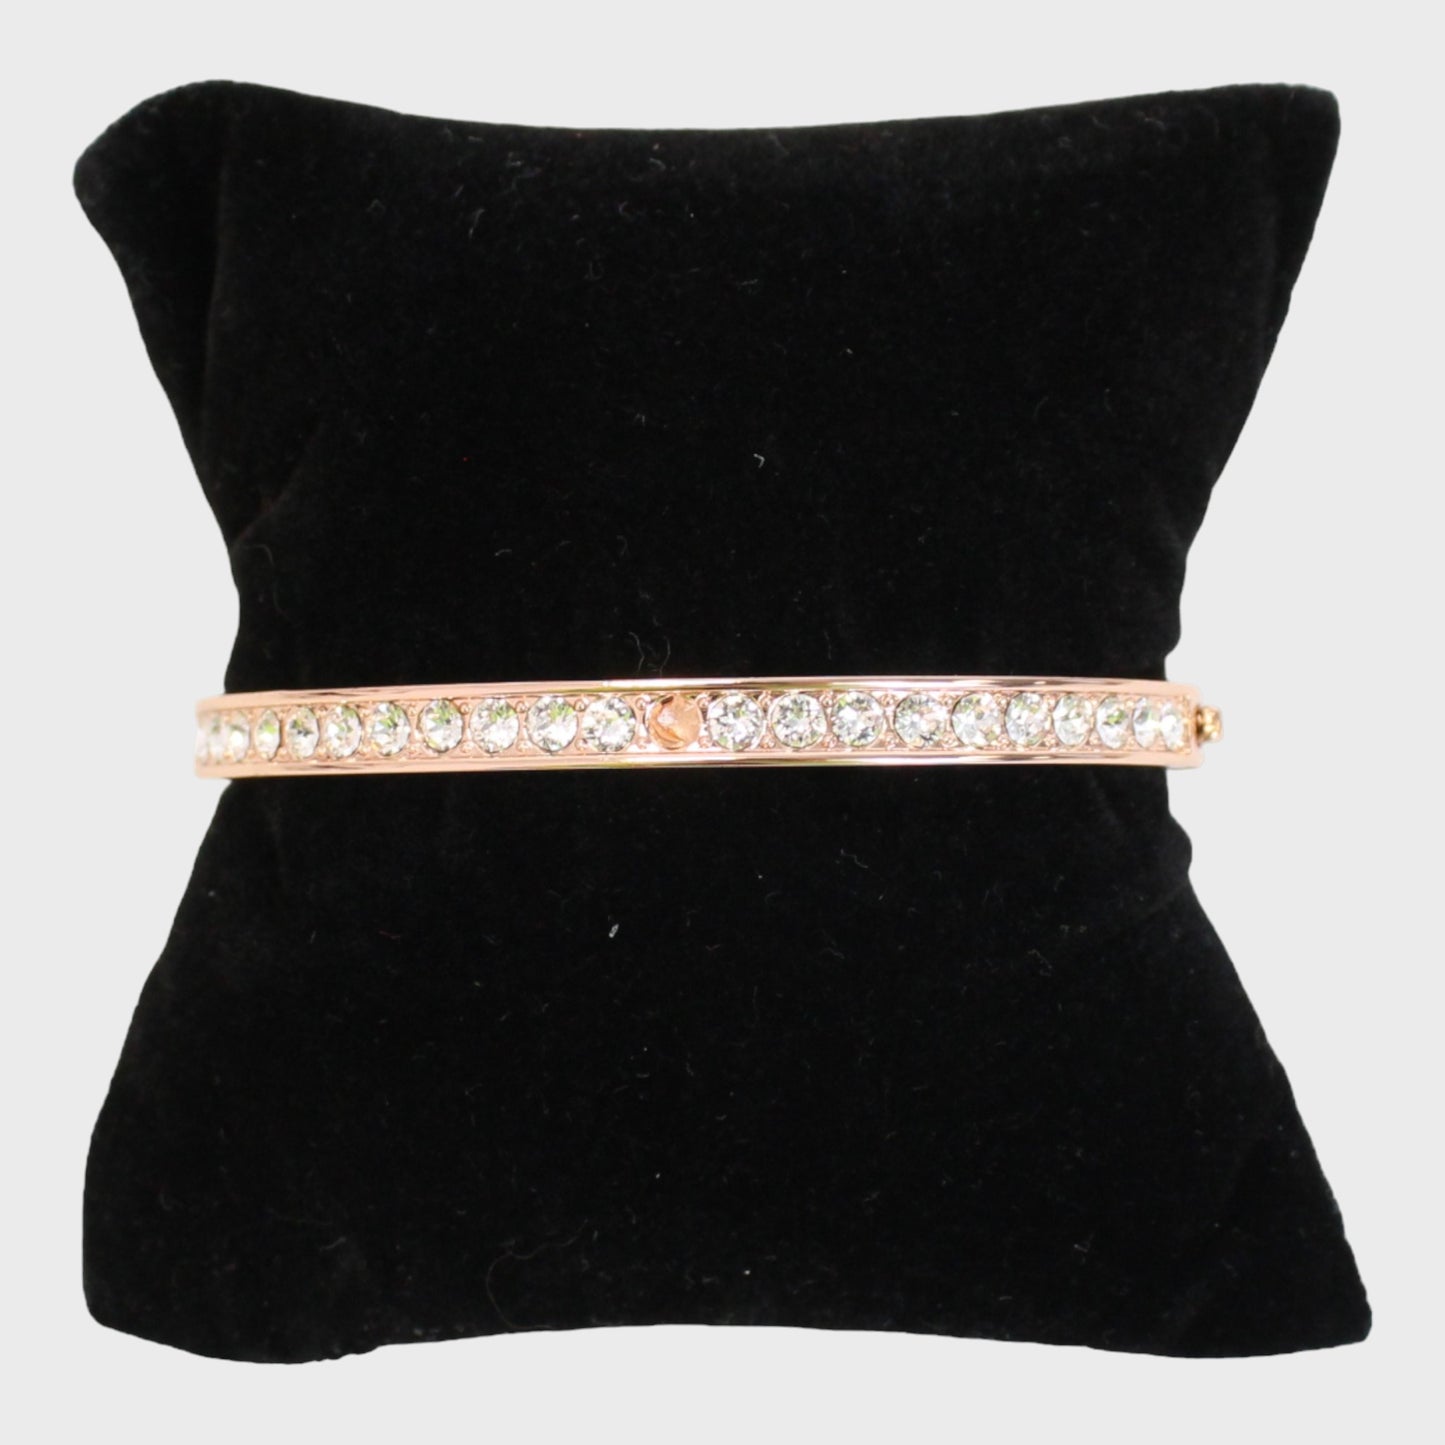 DESIGNER Lady's/Kid's Bracelet with Gems Silver/Rose Gold